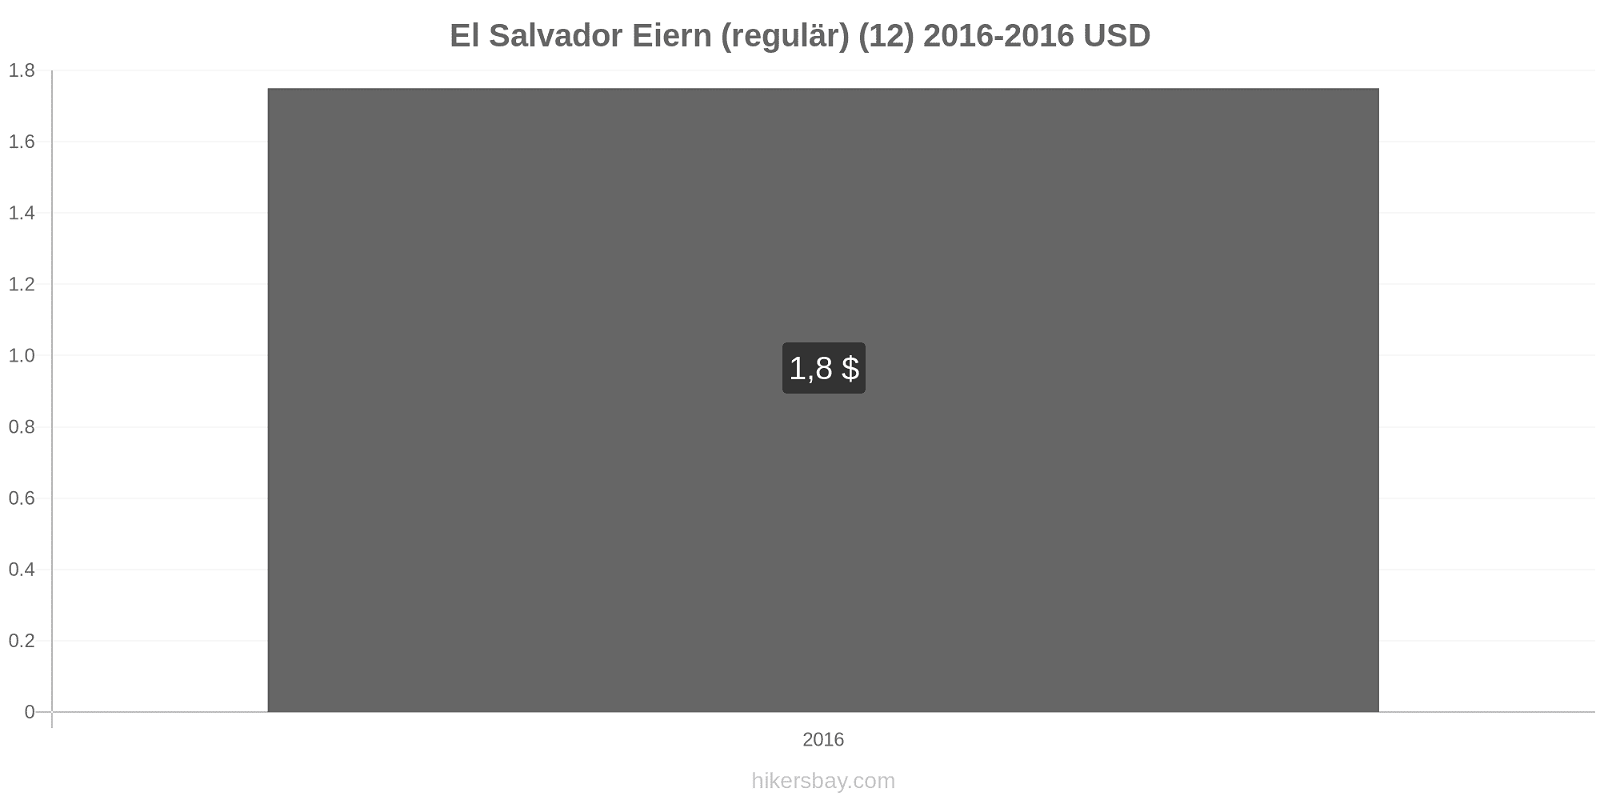 El Salvador Preisänderungen Eier (regelmäßig) (12) hikersbay.com